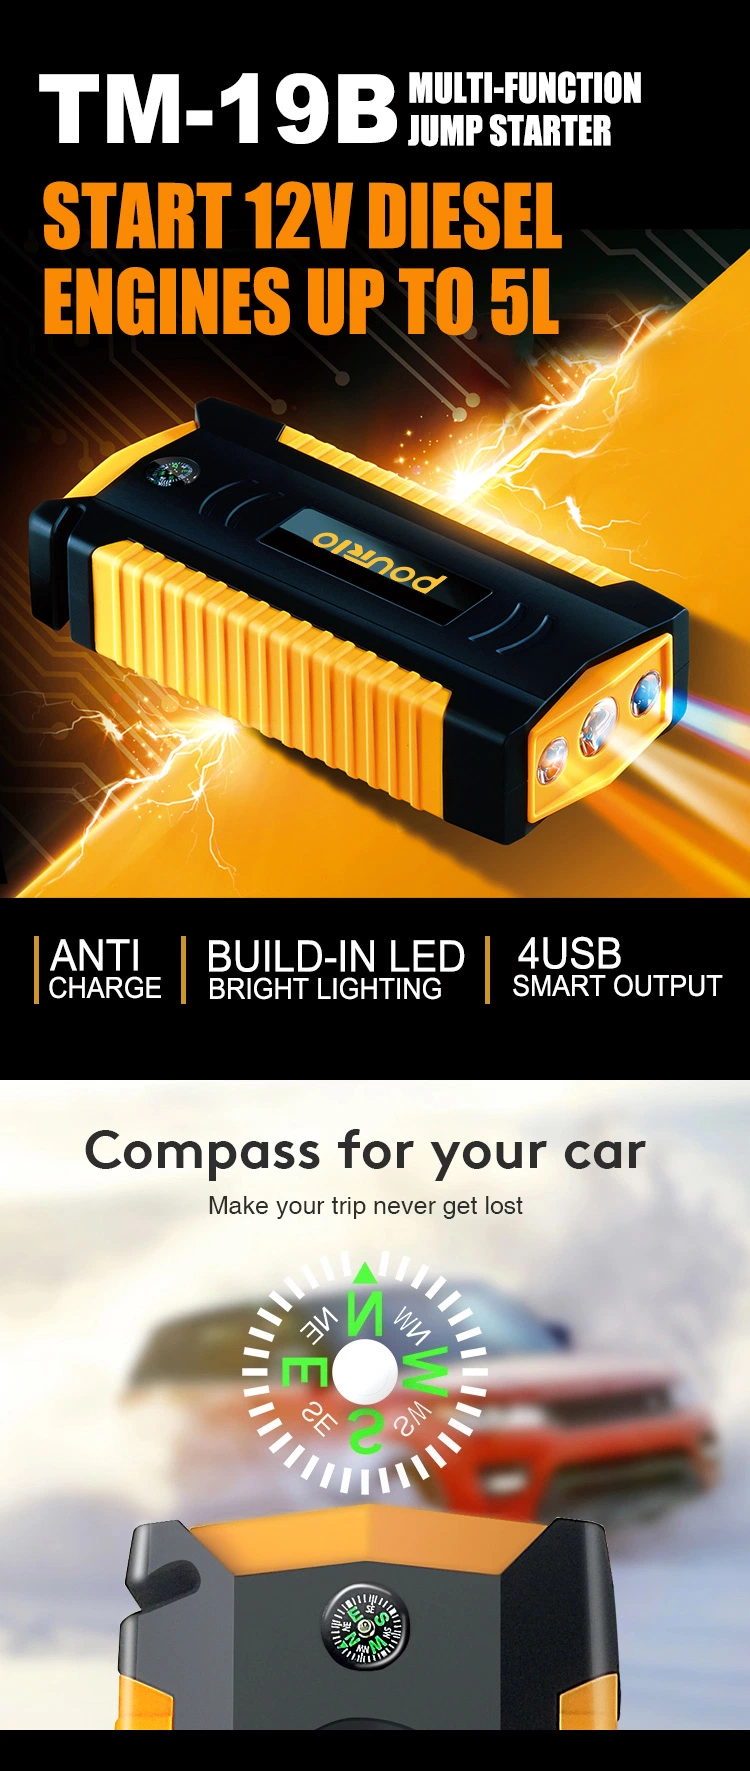 High Power 69800mAh Portable Power Bank Lithium Battery Kit 6 Volt Battery Booster Car Jump Starter